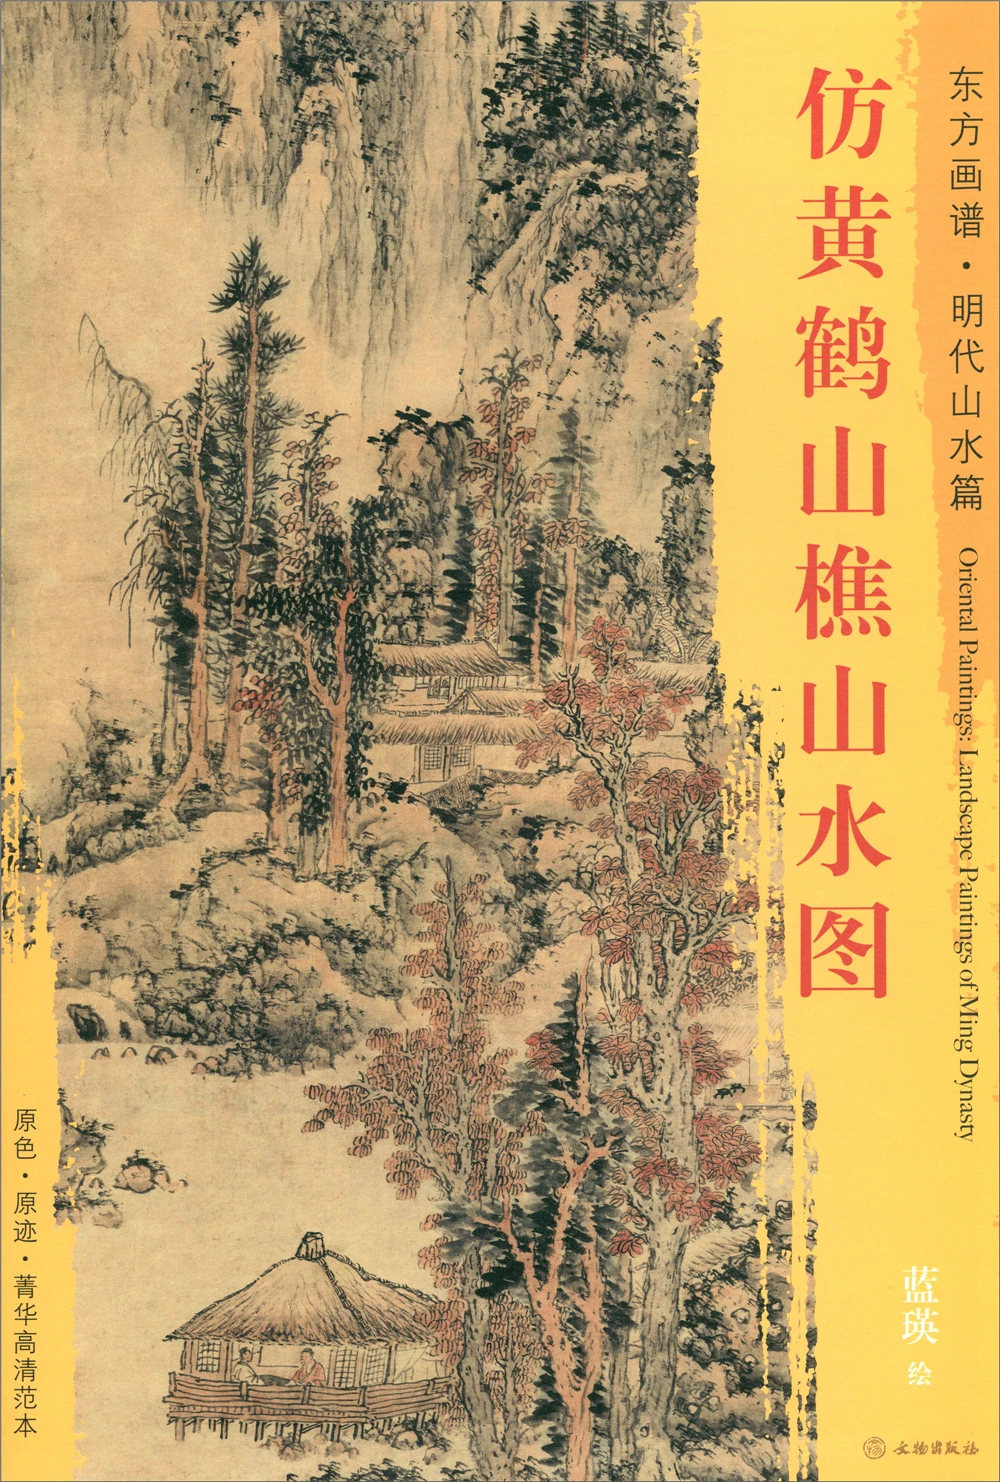 

Альбом для рисования эскизов, Восточная живопись. Пейзажи династии Мин, имитирующие Горный пейзаж хуанхе